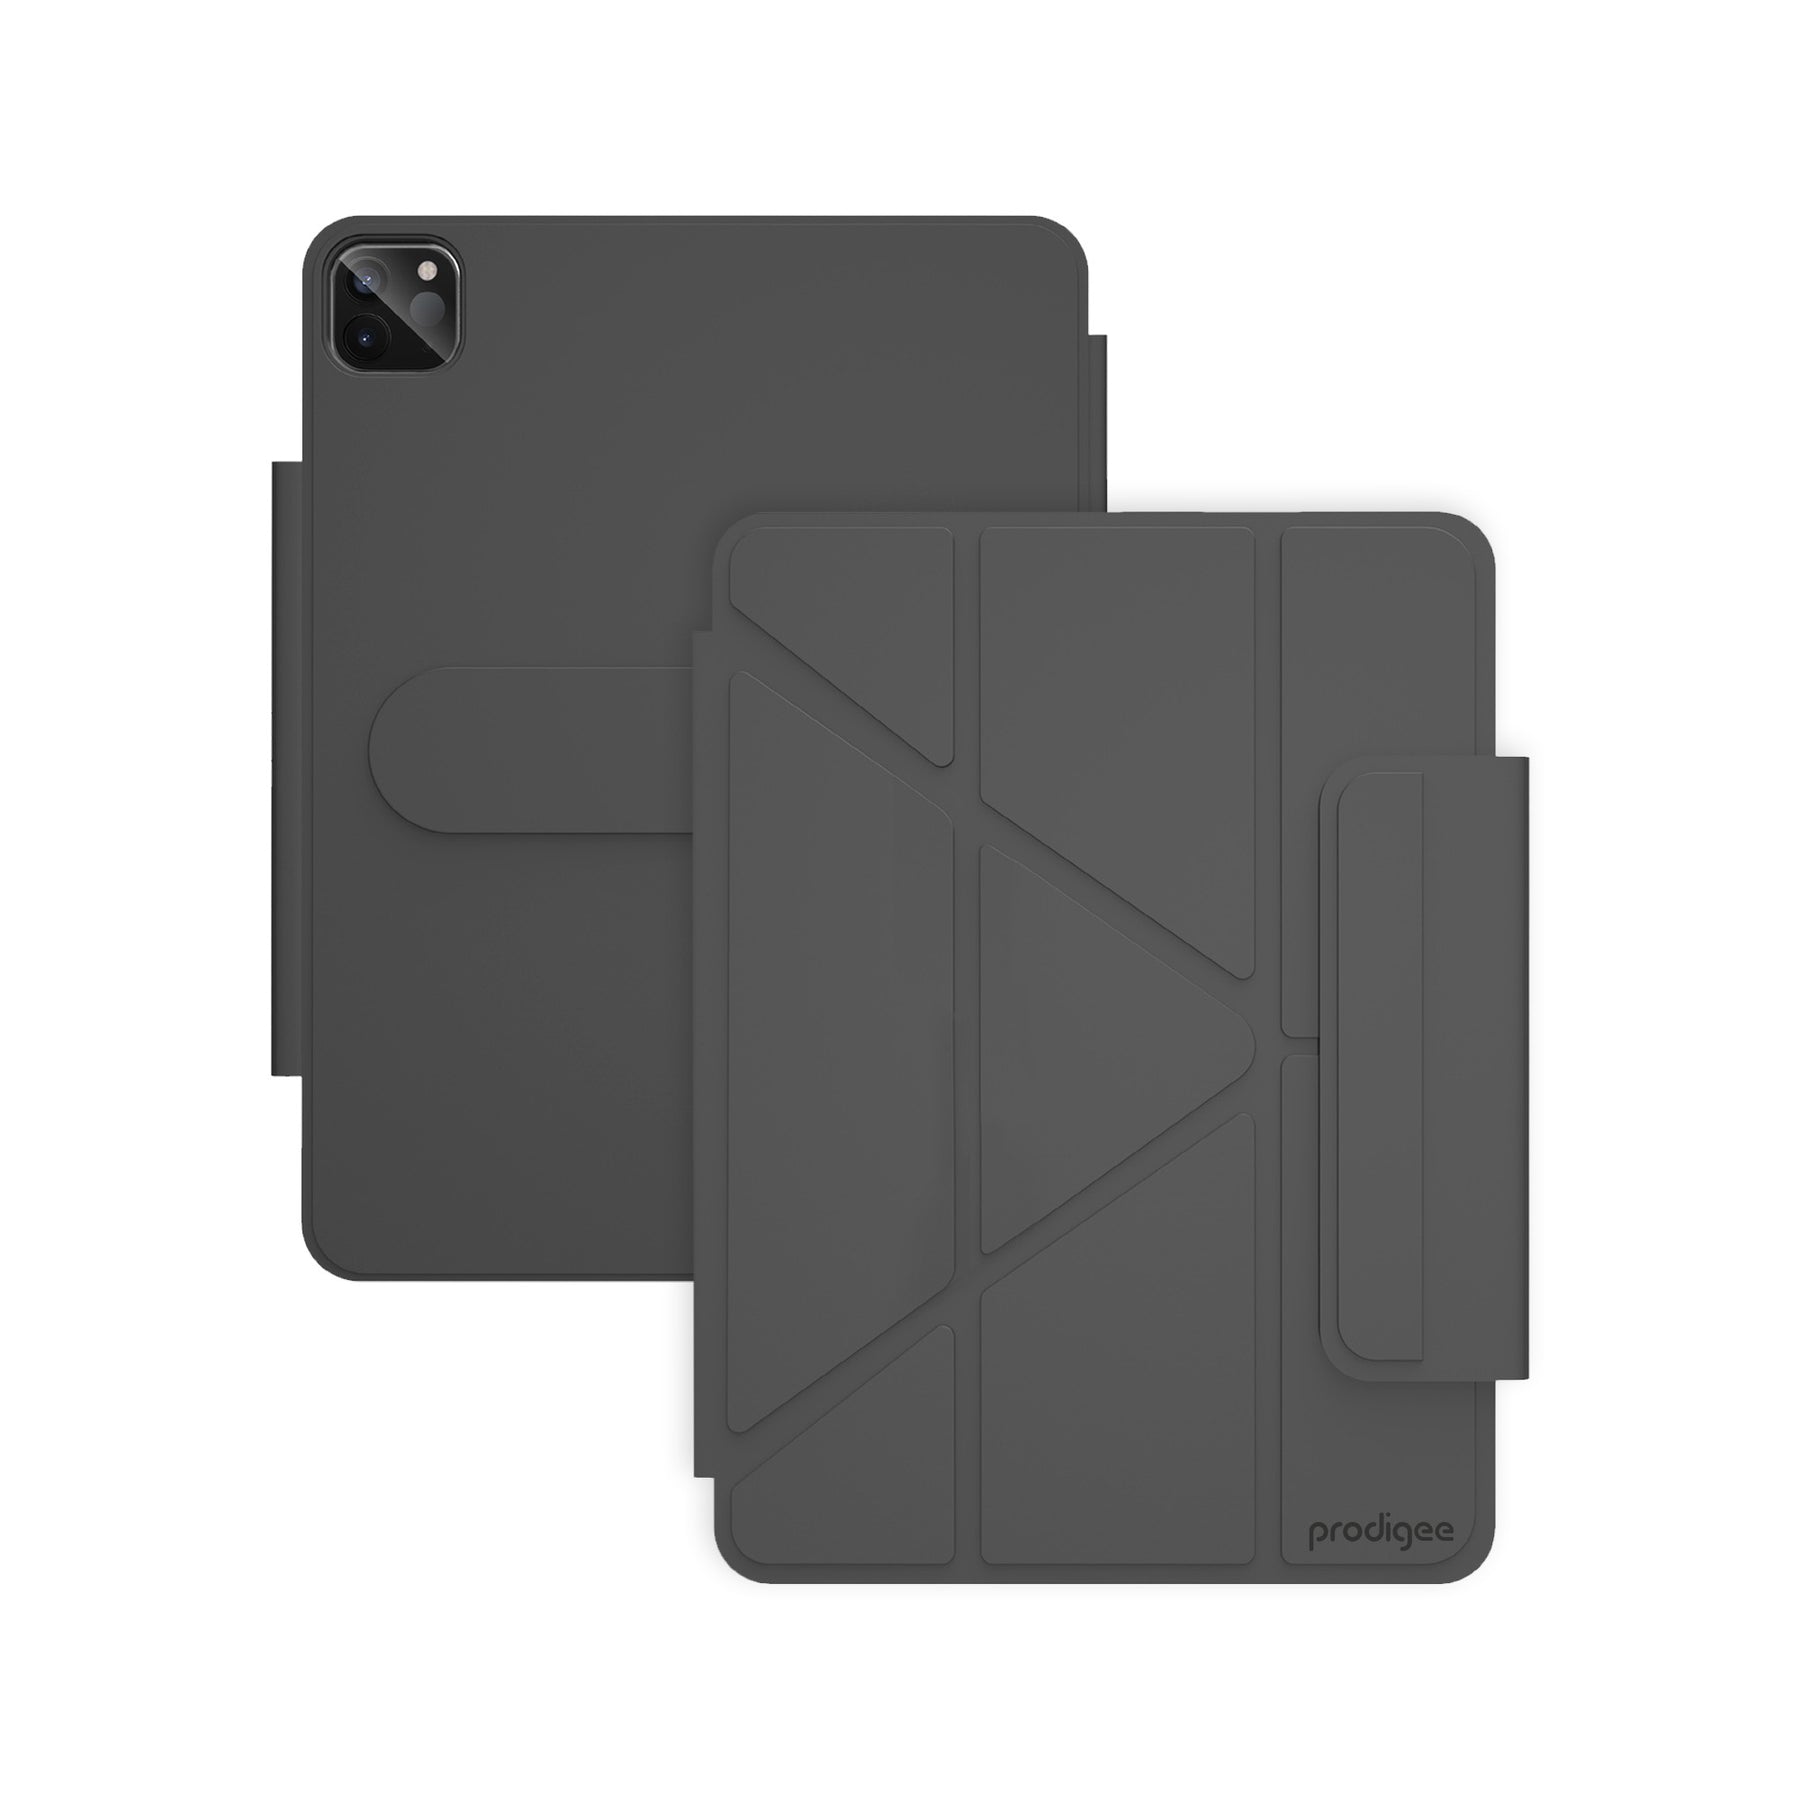 Revolve for iPad Pro 11”